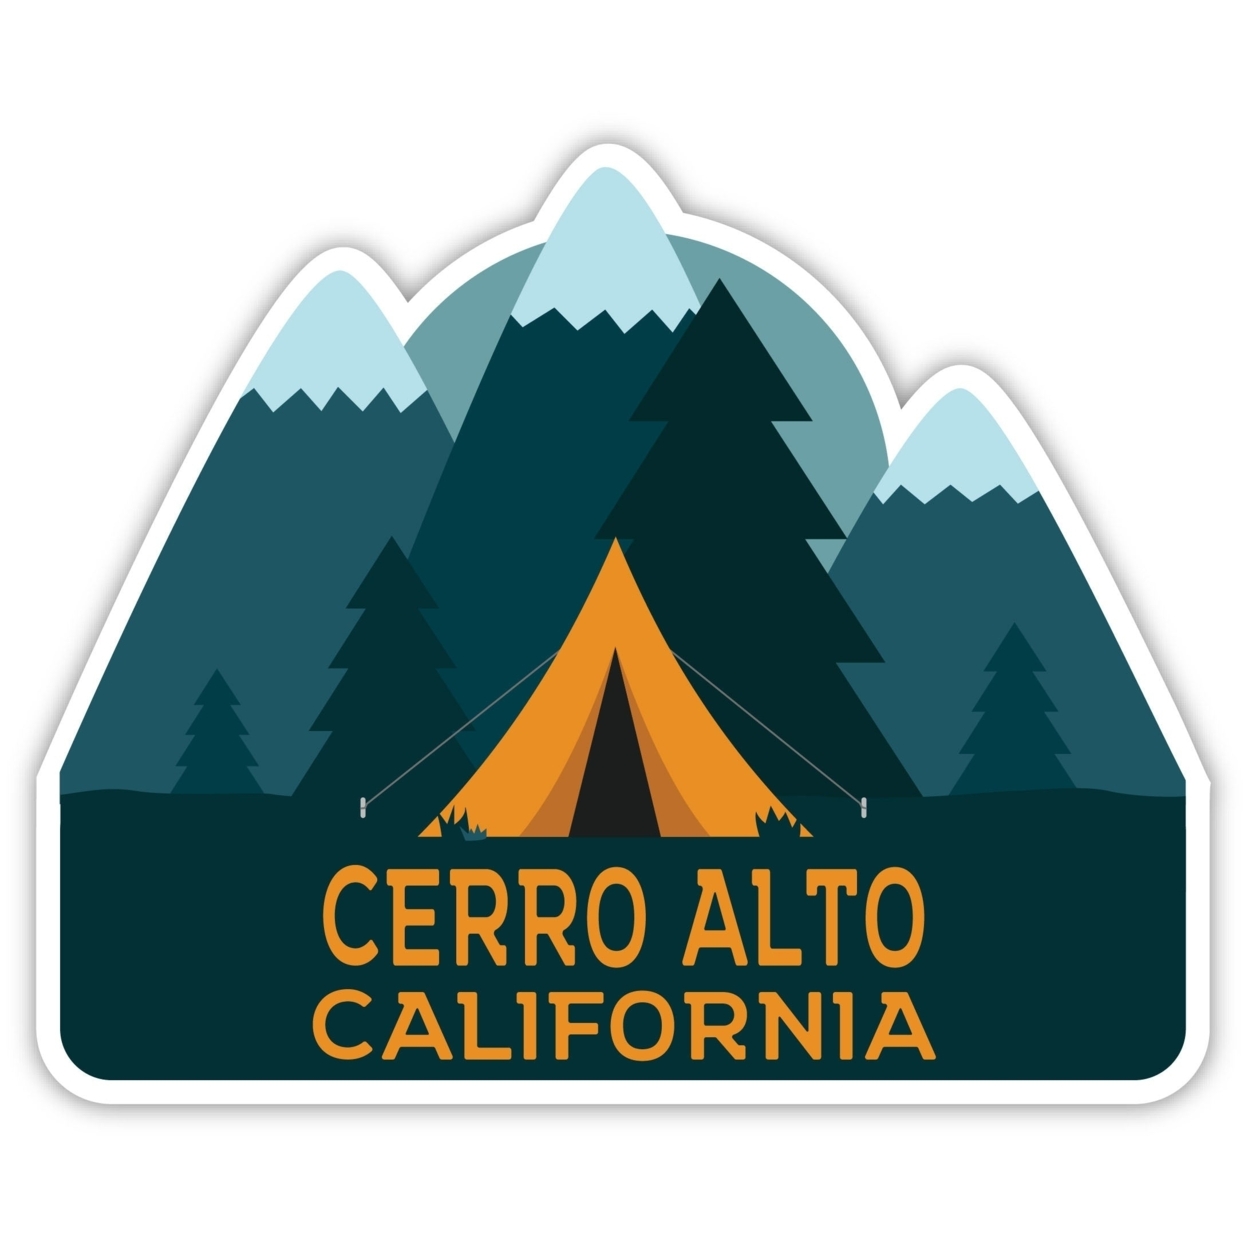 Cerro Alto California Souvenir Decorative Stickers (Choose Theme And Size) - 4-Pack, 8-Inch, Tent